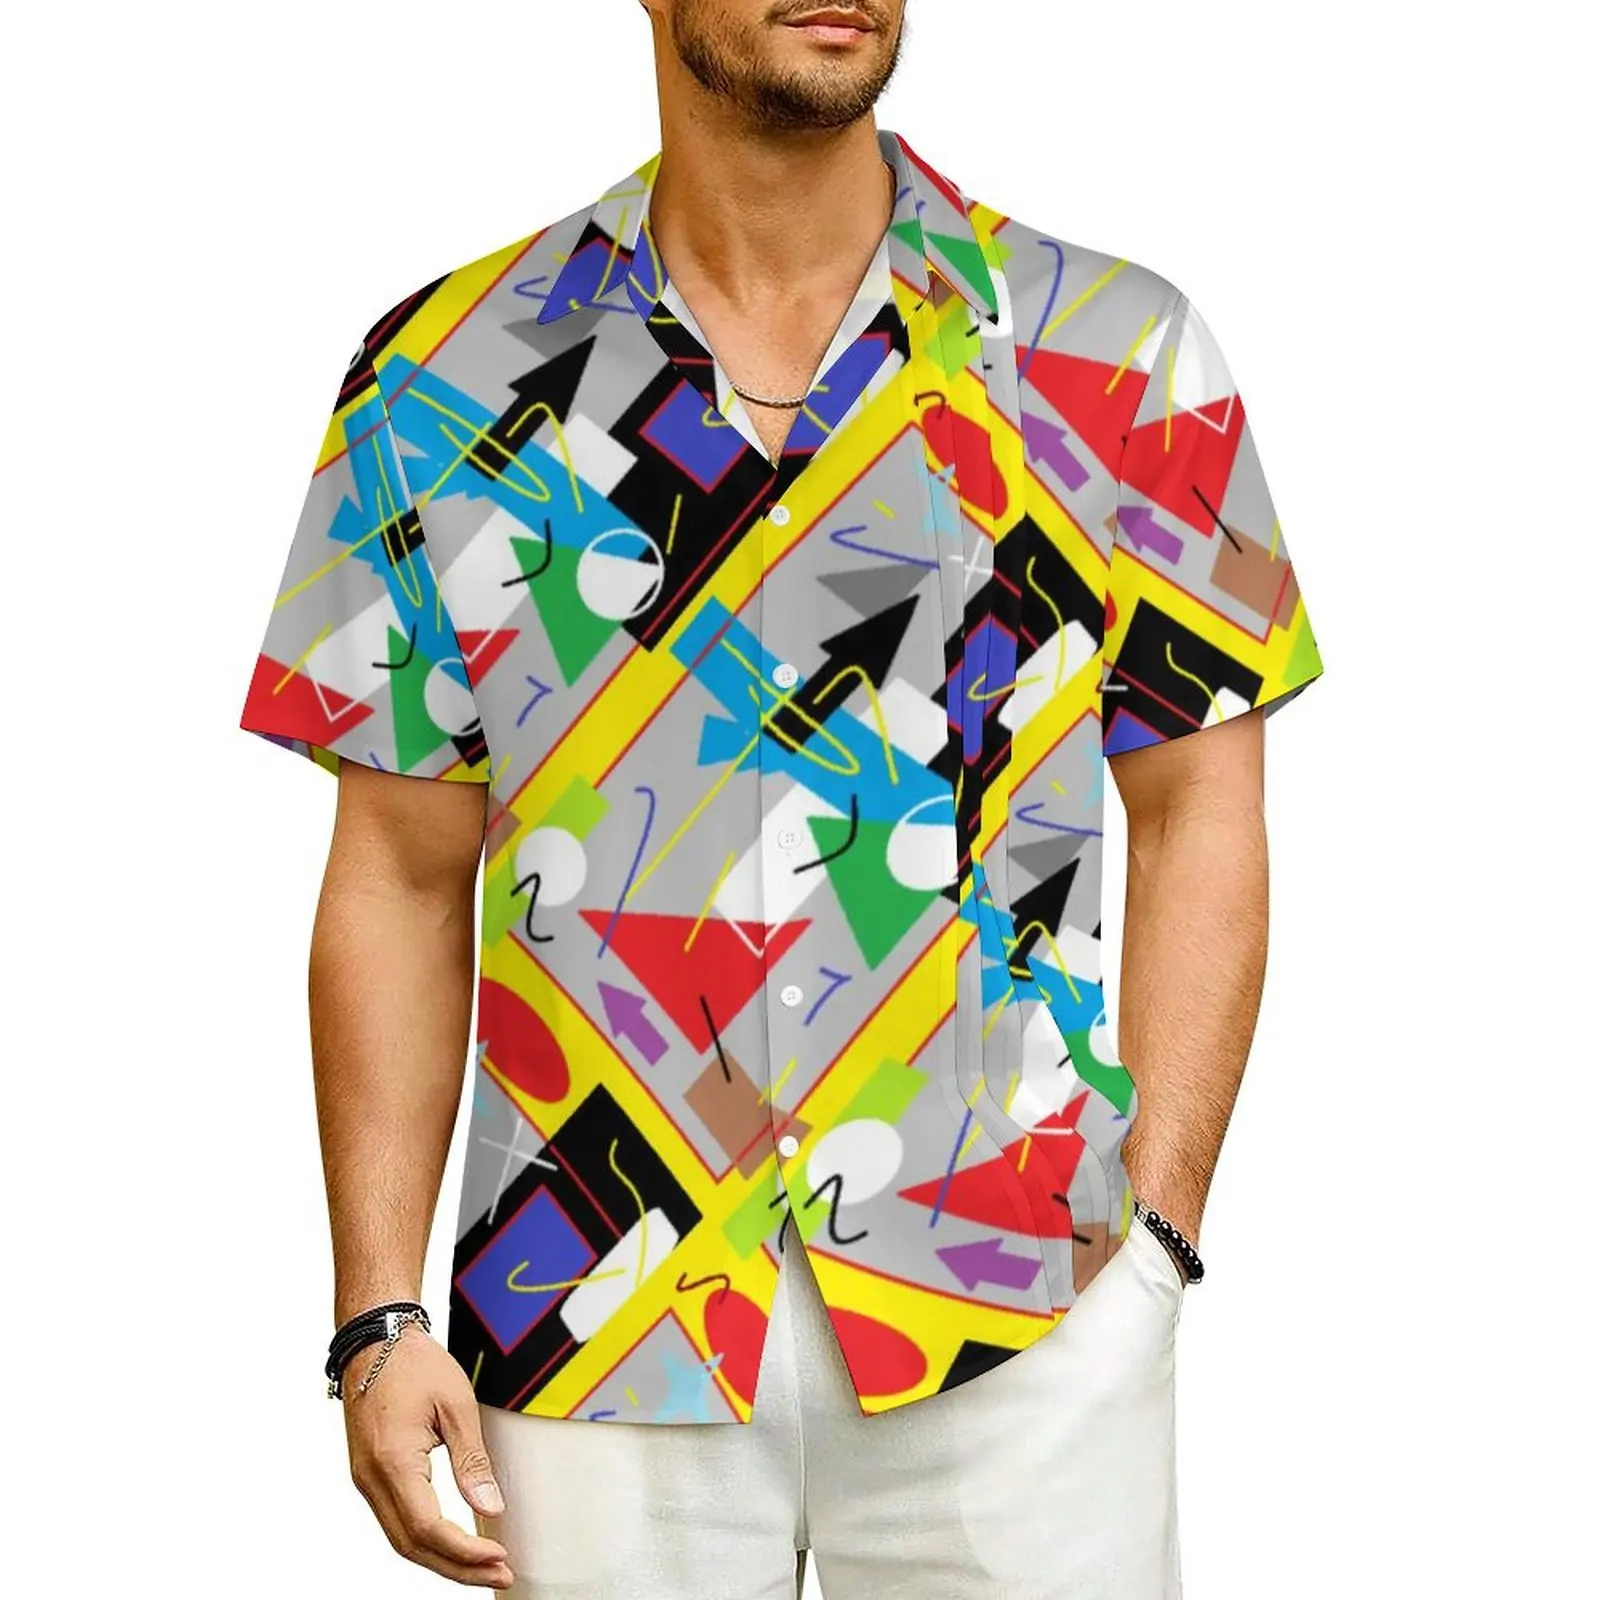 

Гавайская пляжная рубашка с абстрактным геометрическим принтом, Свободные повседневные рубашки с забавным художественным принтом, Мужской Воздухопроницаемый Топ оверсайз с коротким рукавом